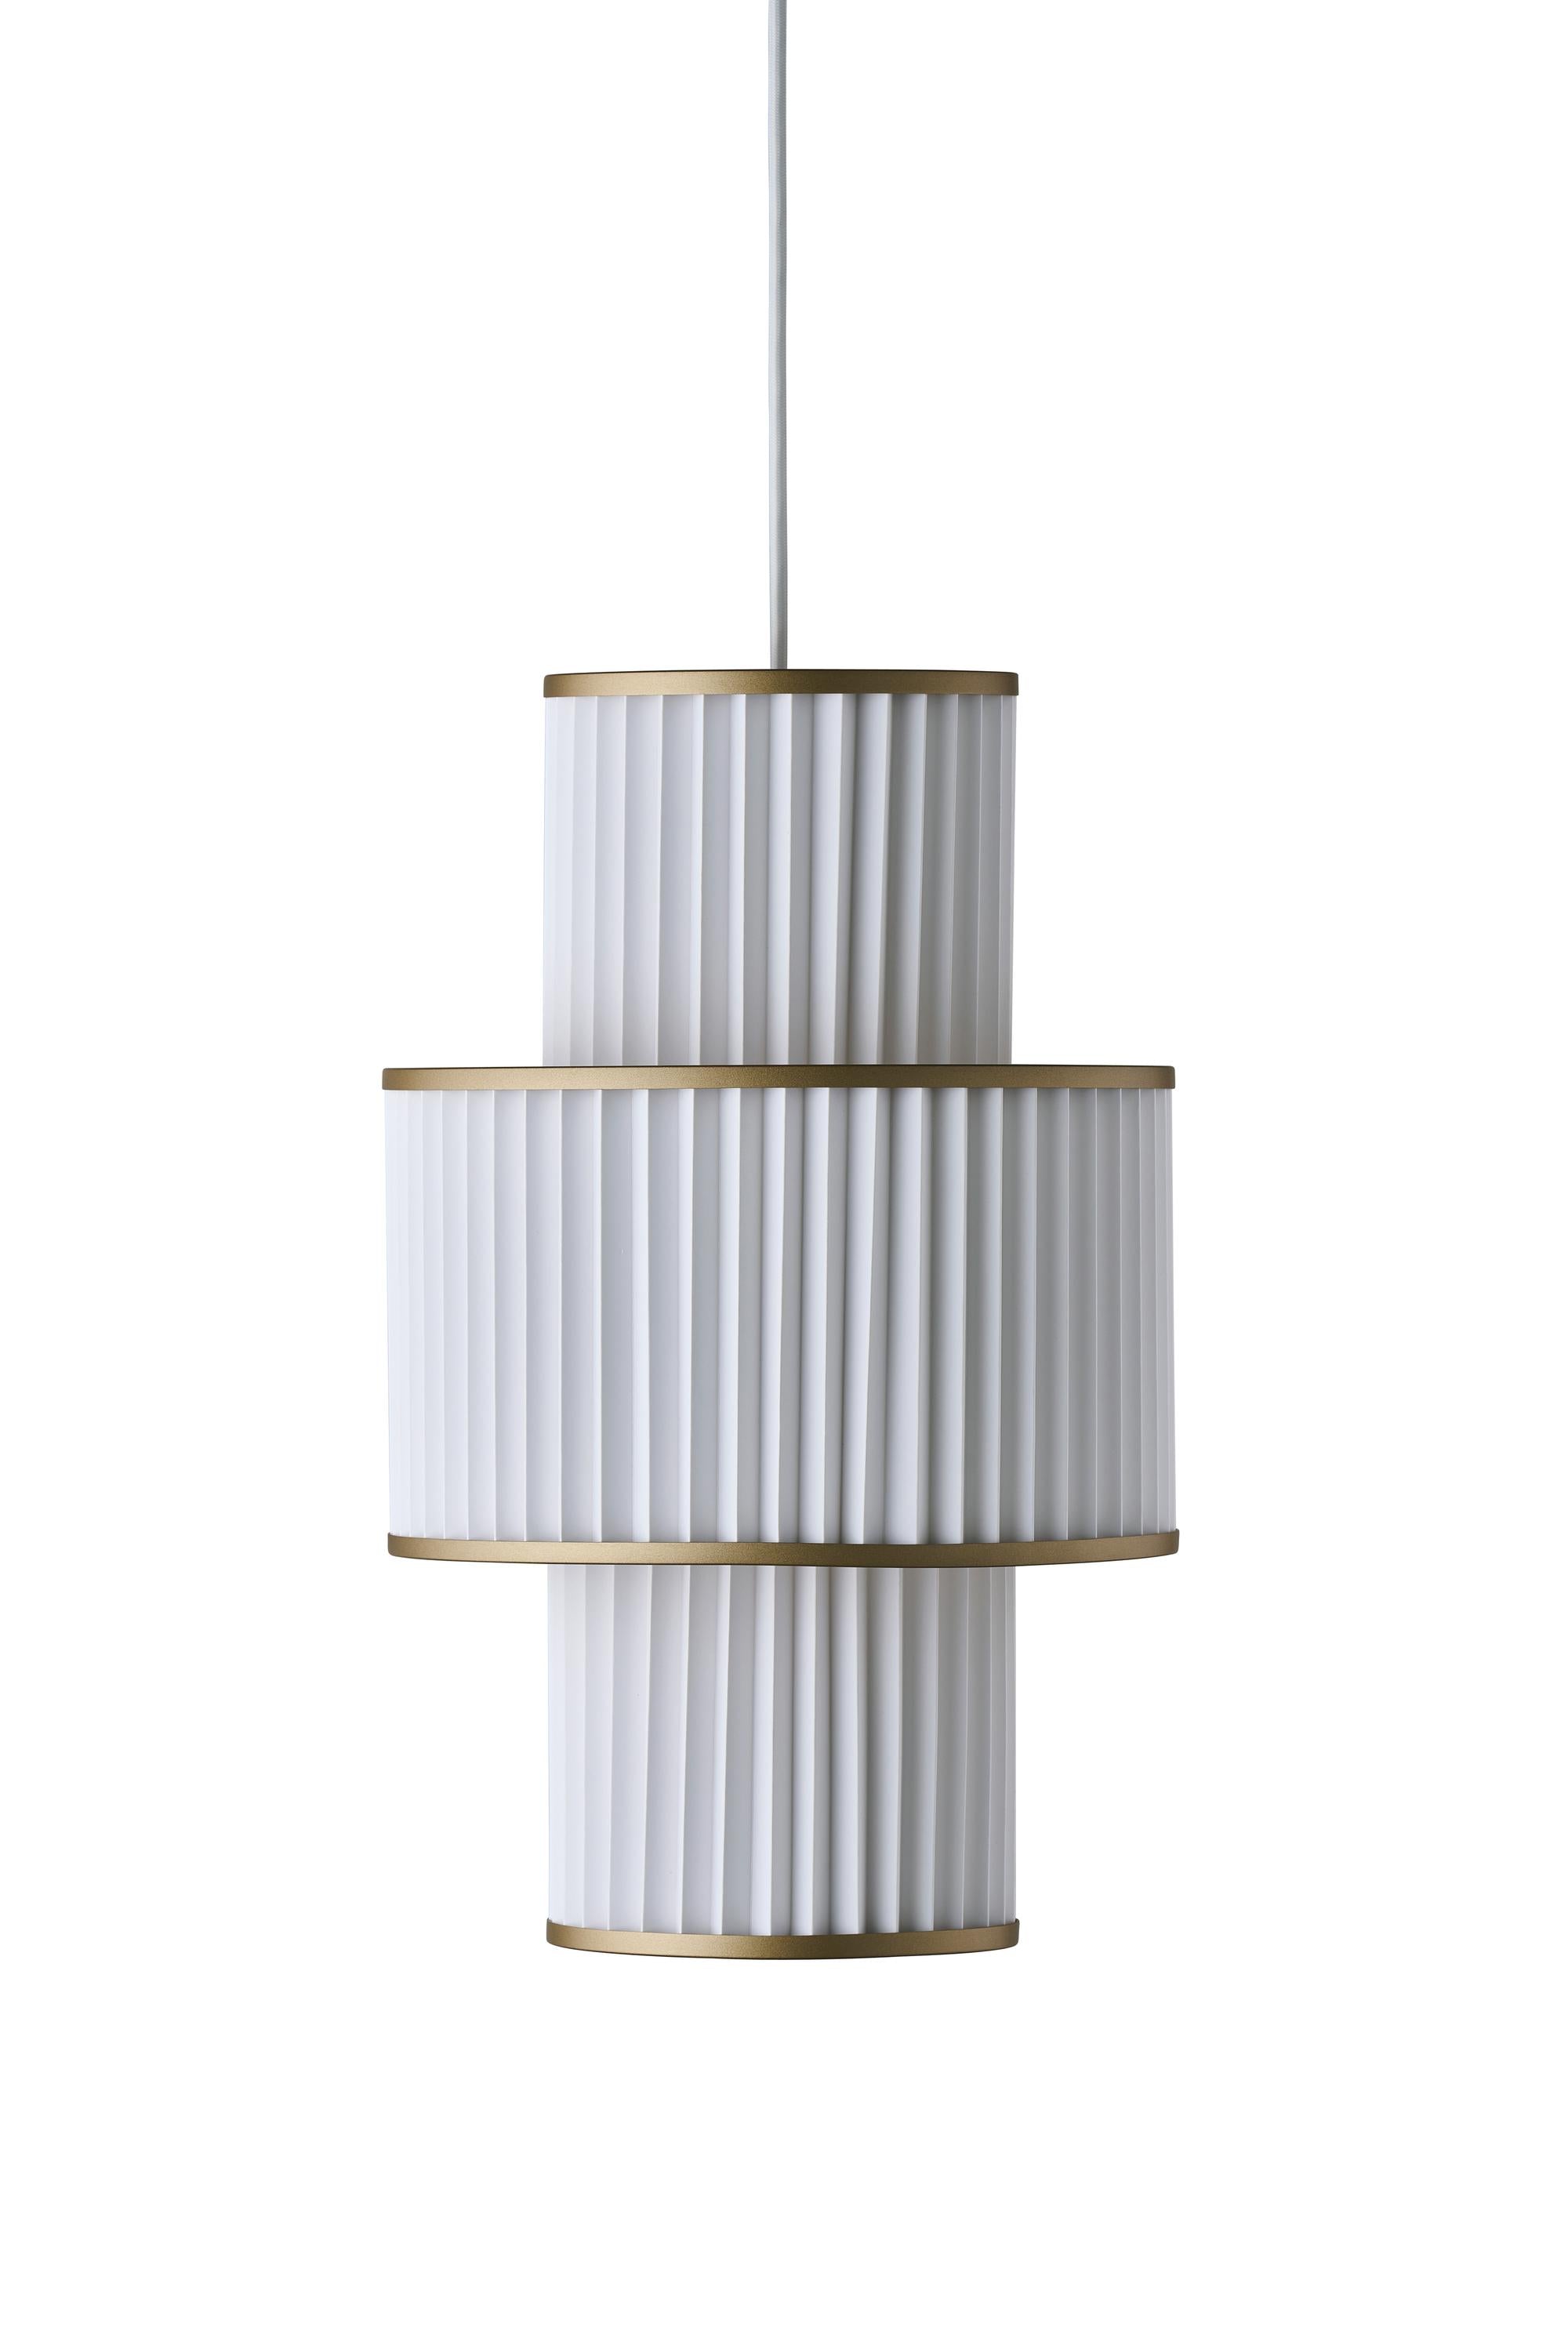 Le Klint Plivello Suspensionslampe Golden/Weiß mit 3 Farbtönen (S m s)